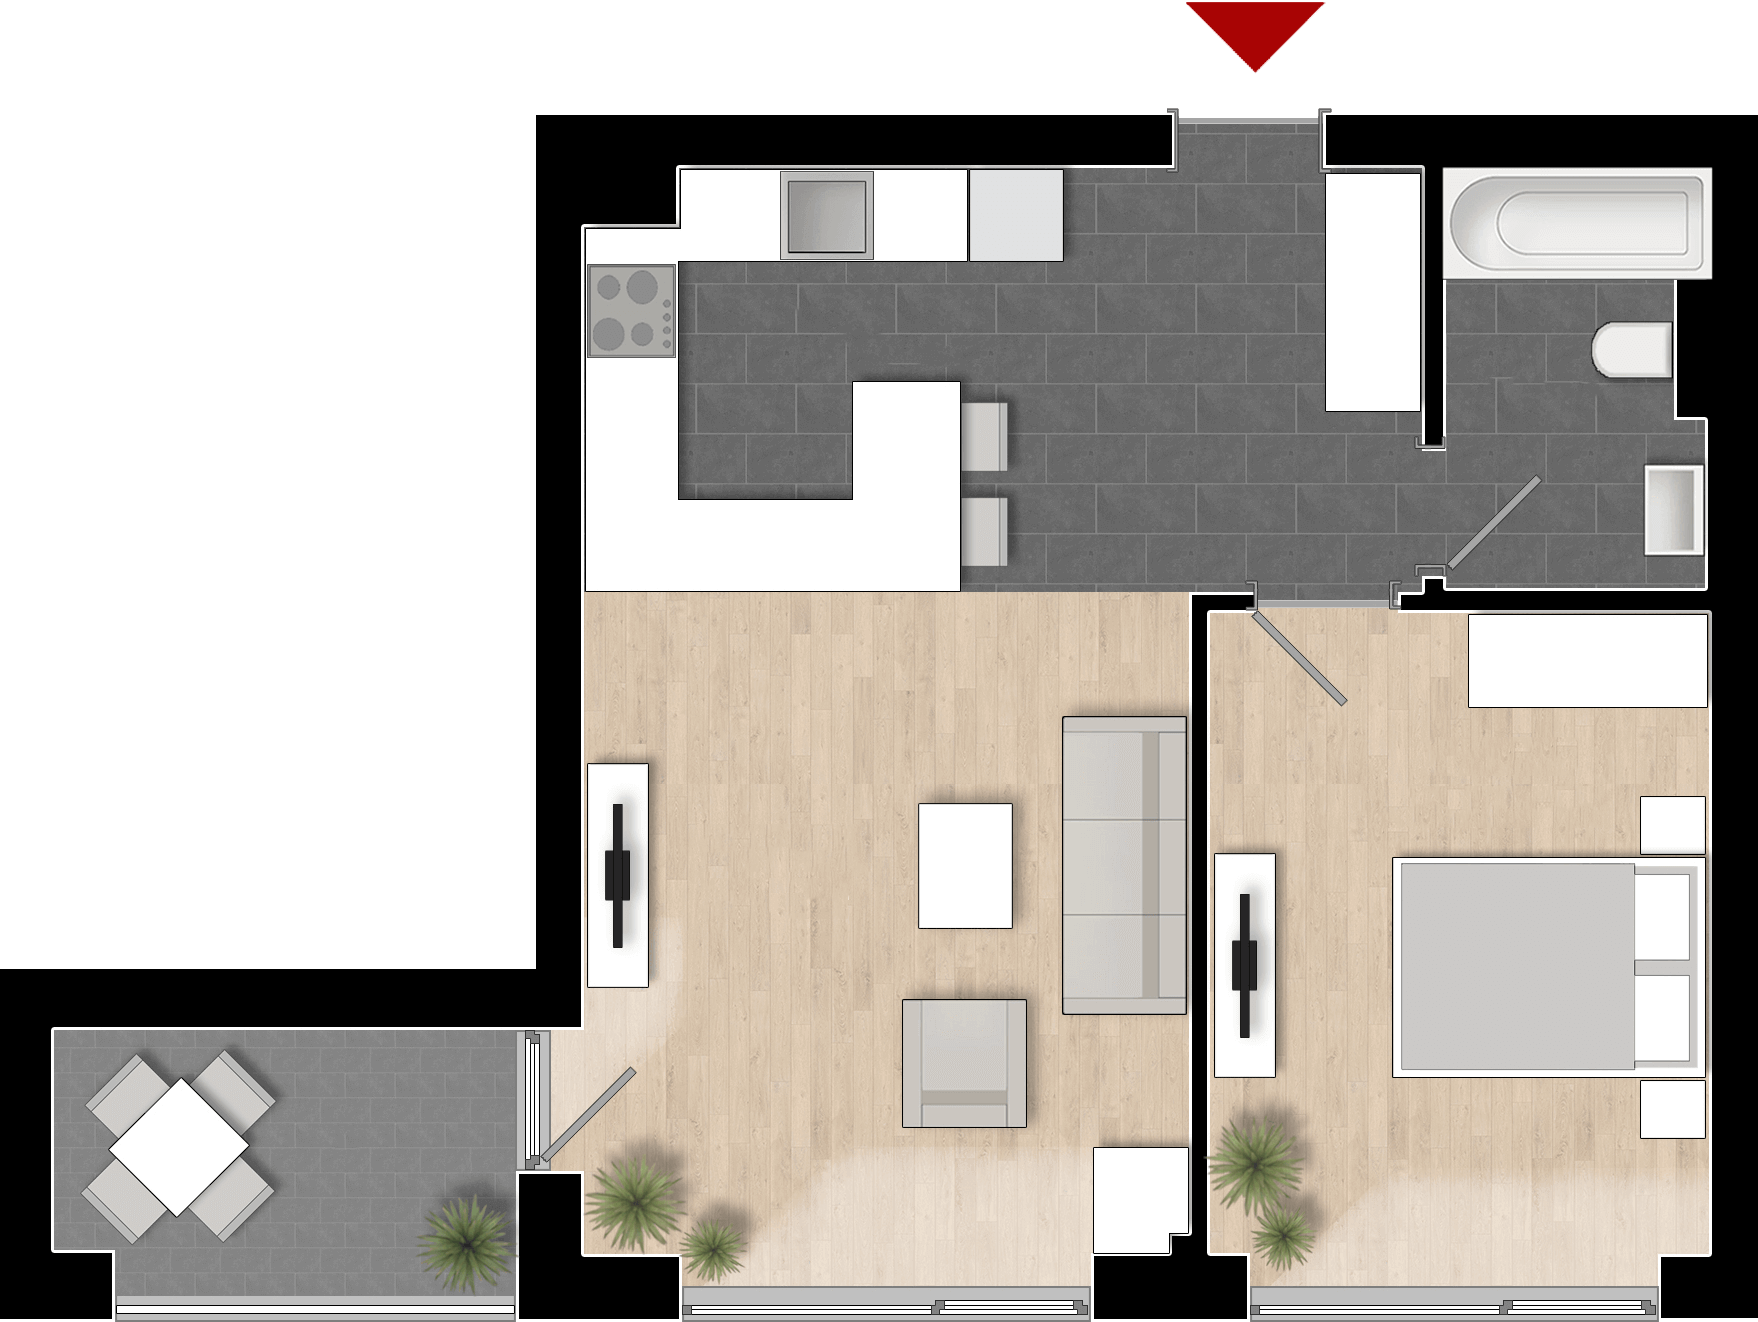  Apartament 908, Tip de apartament 1A cu 2 camere 